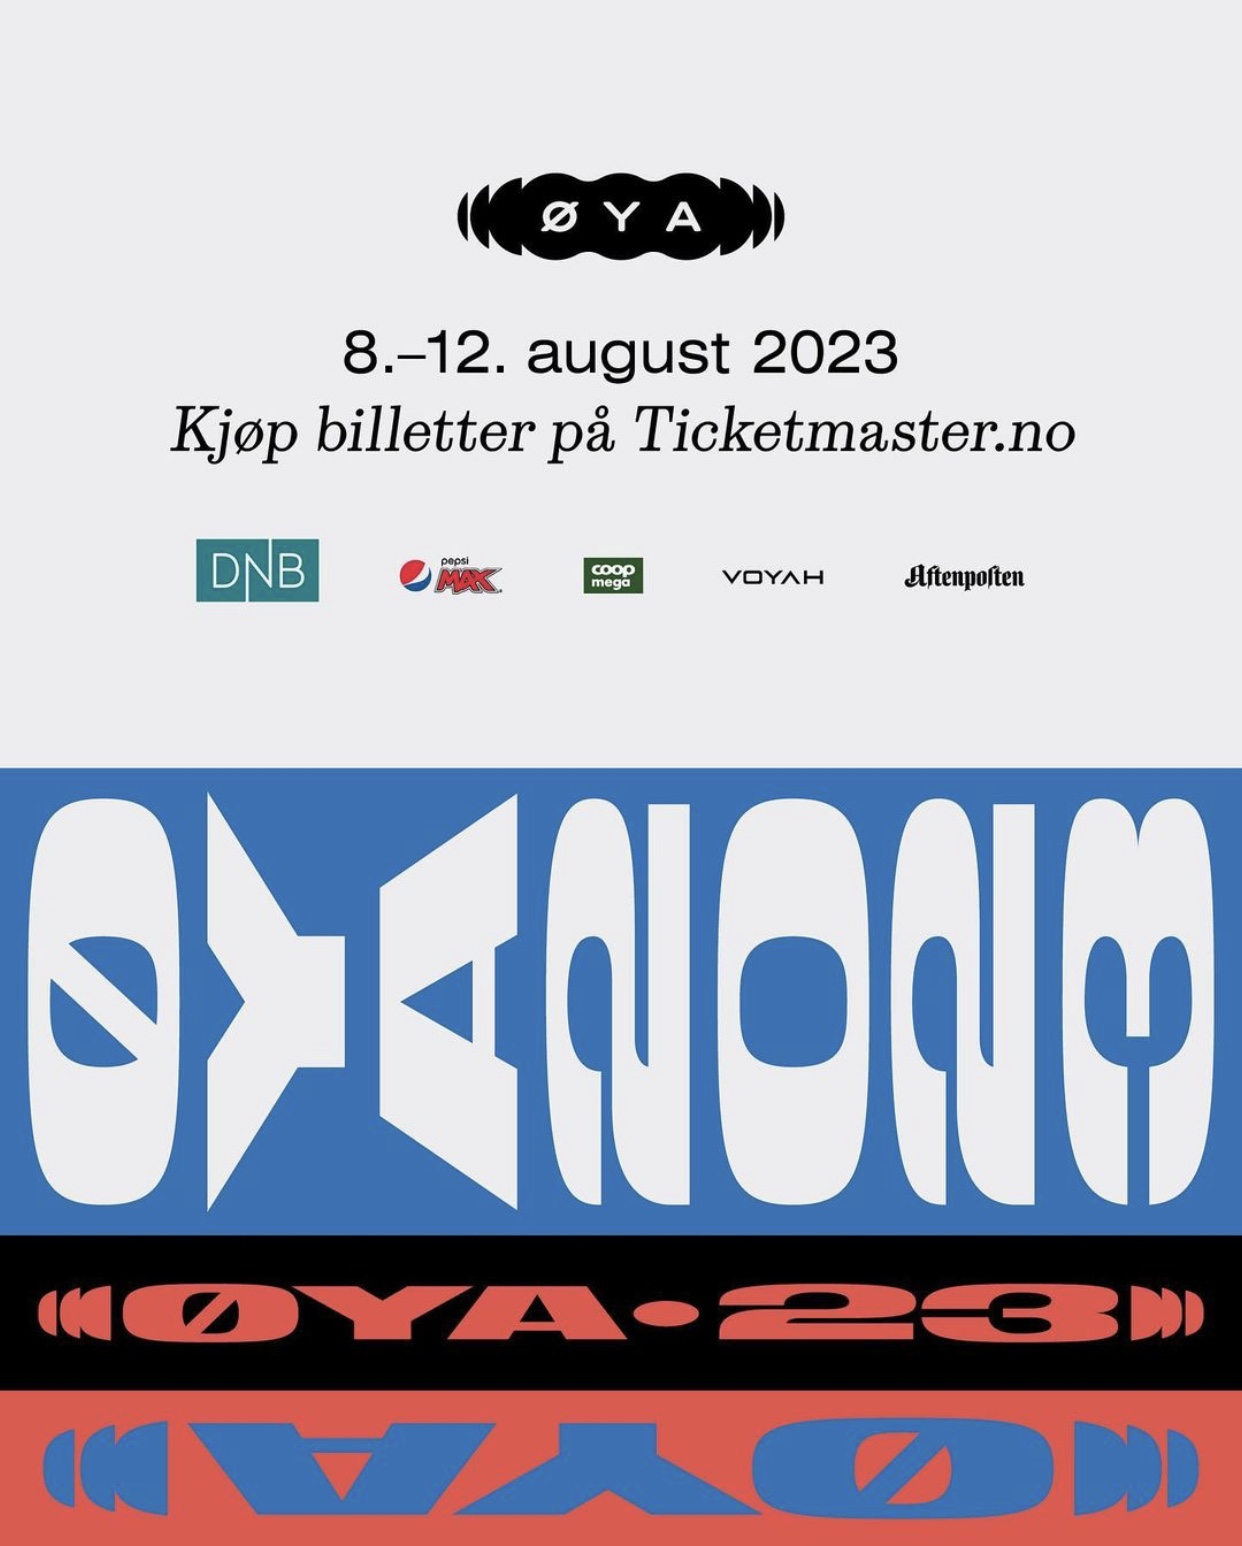 Se agregan nuevos artistas al cartel del Øya Festival 2023